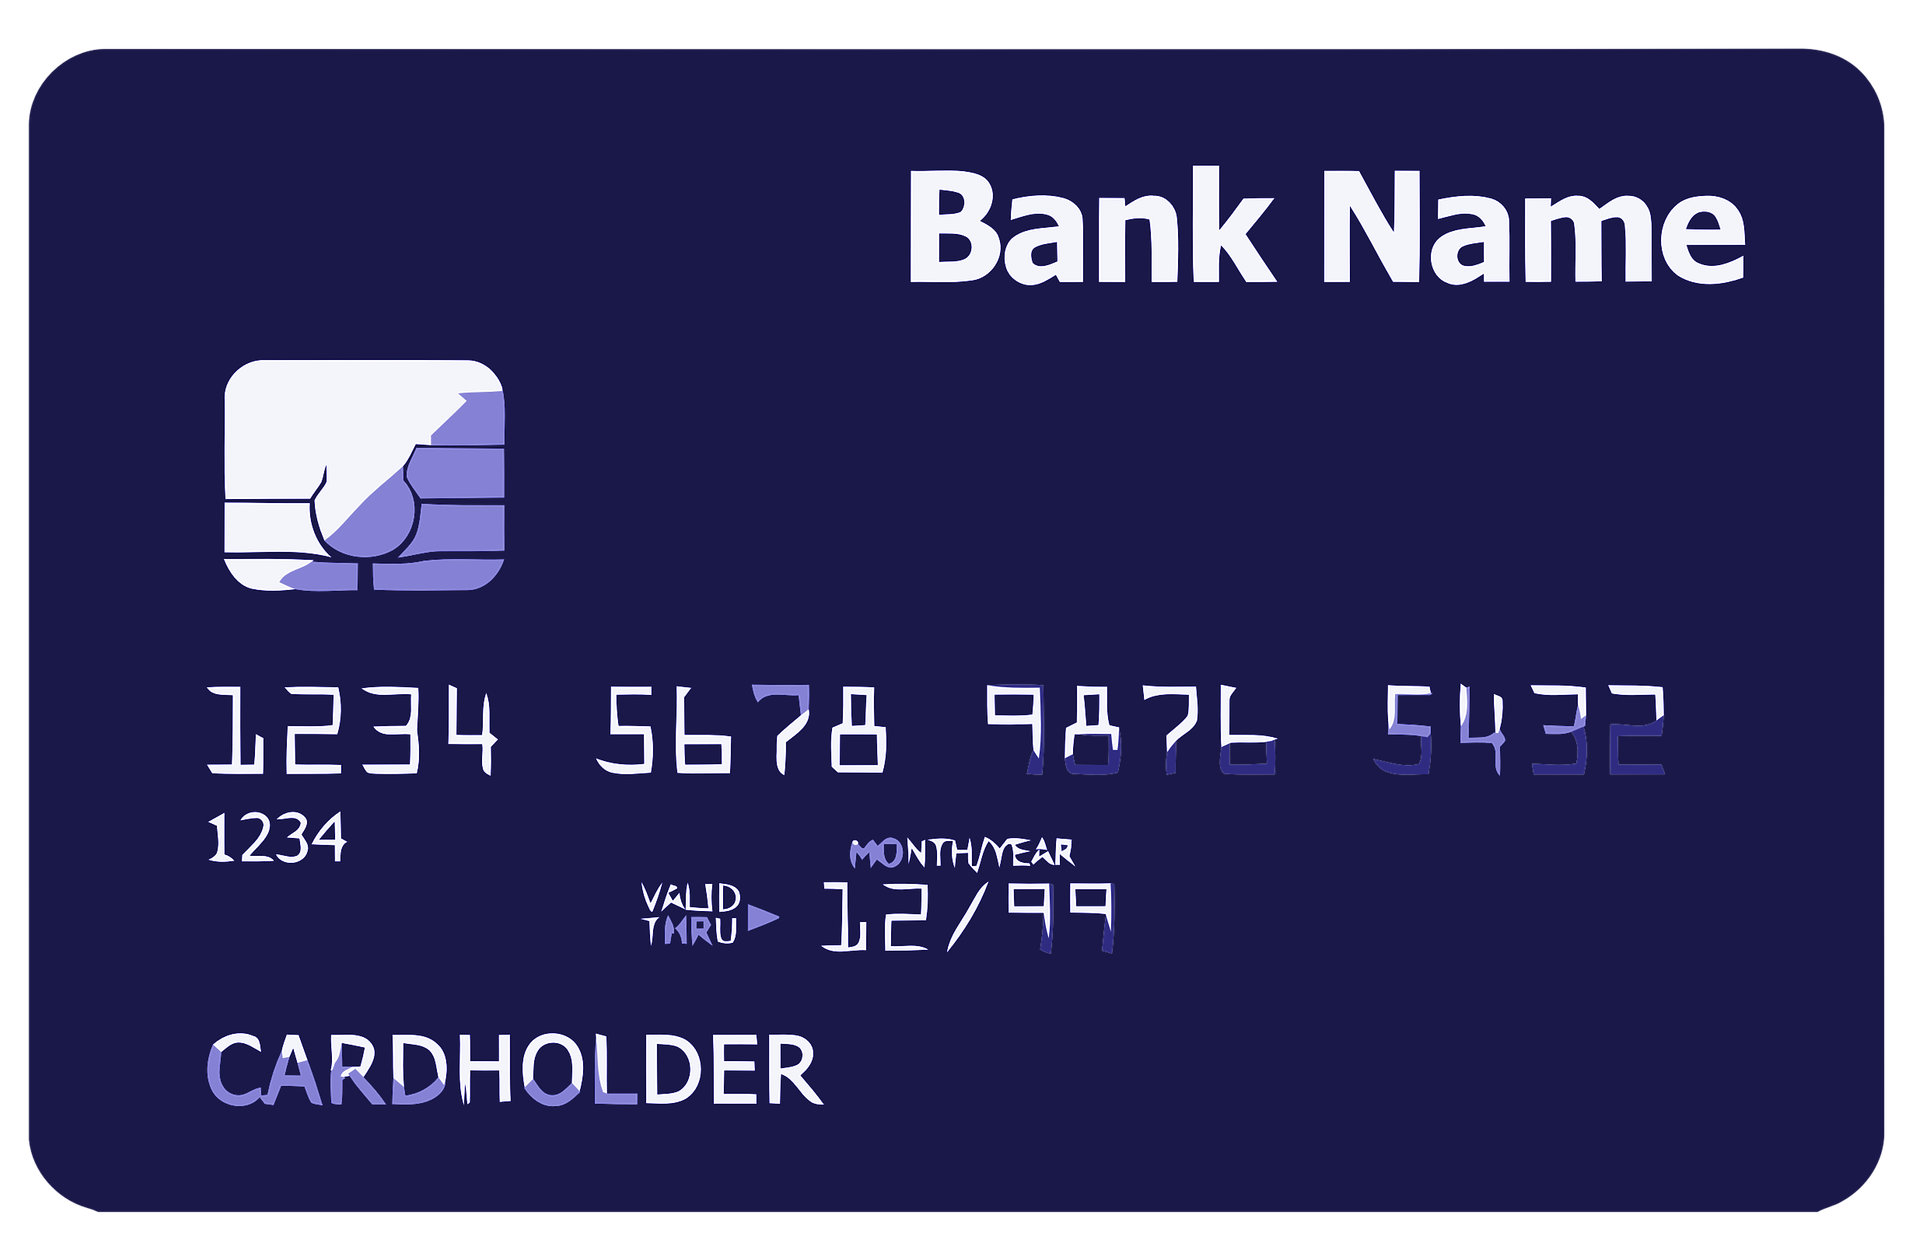 Credit Card Scams - Huge Problem